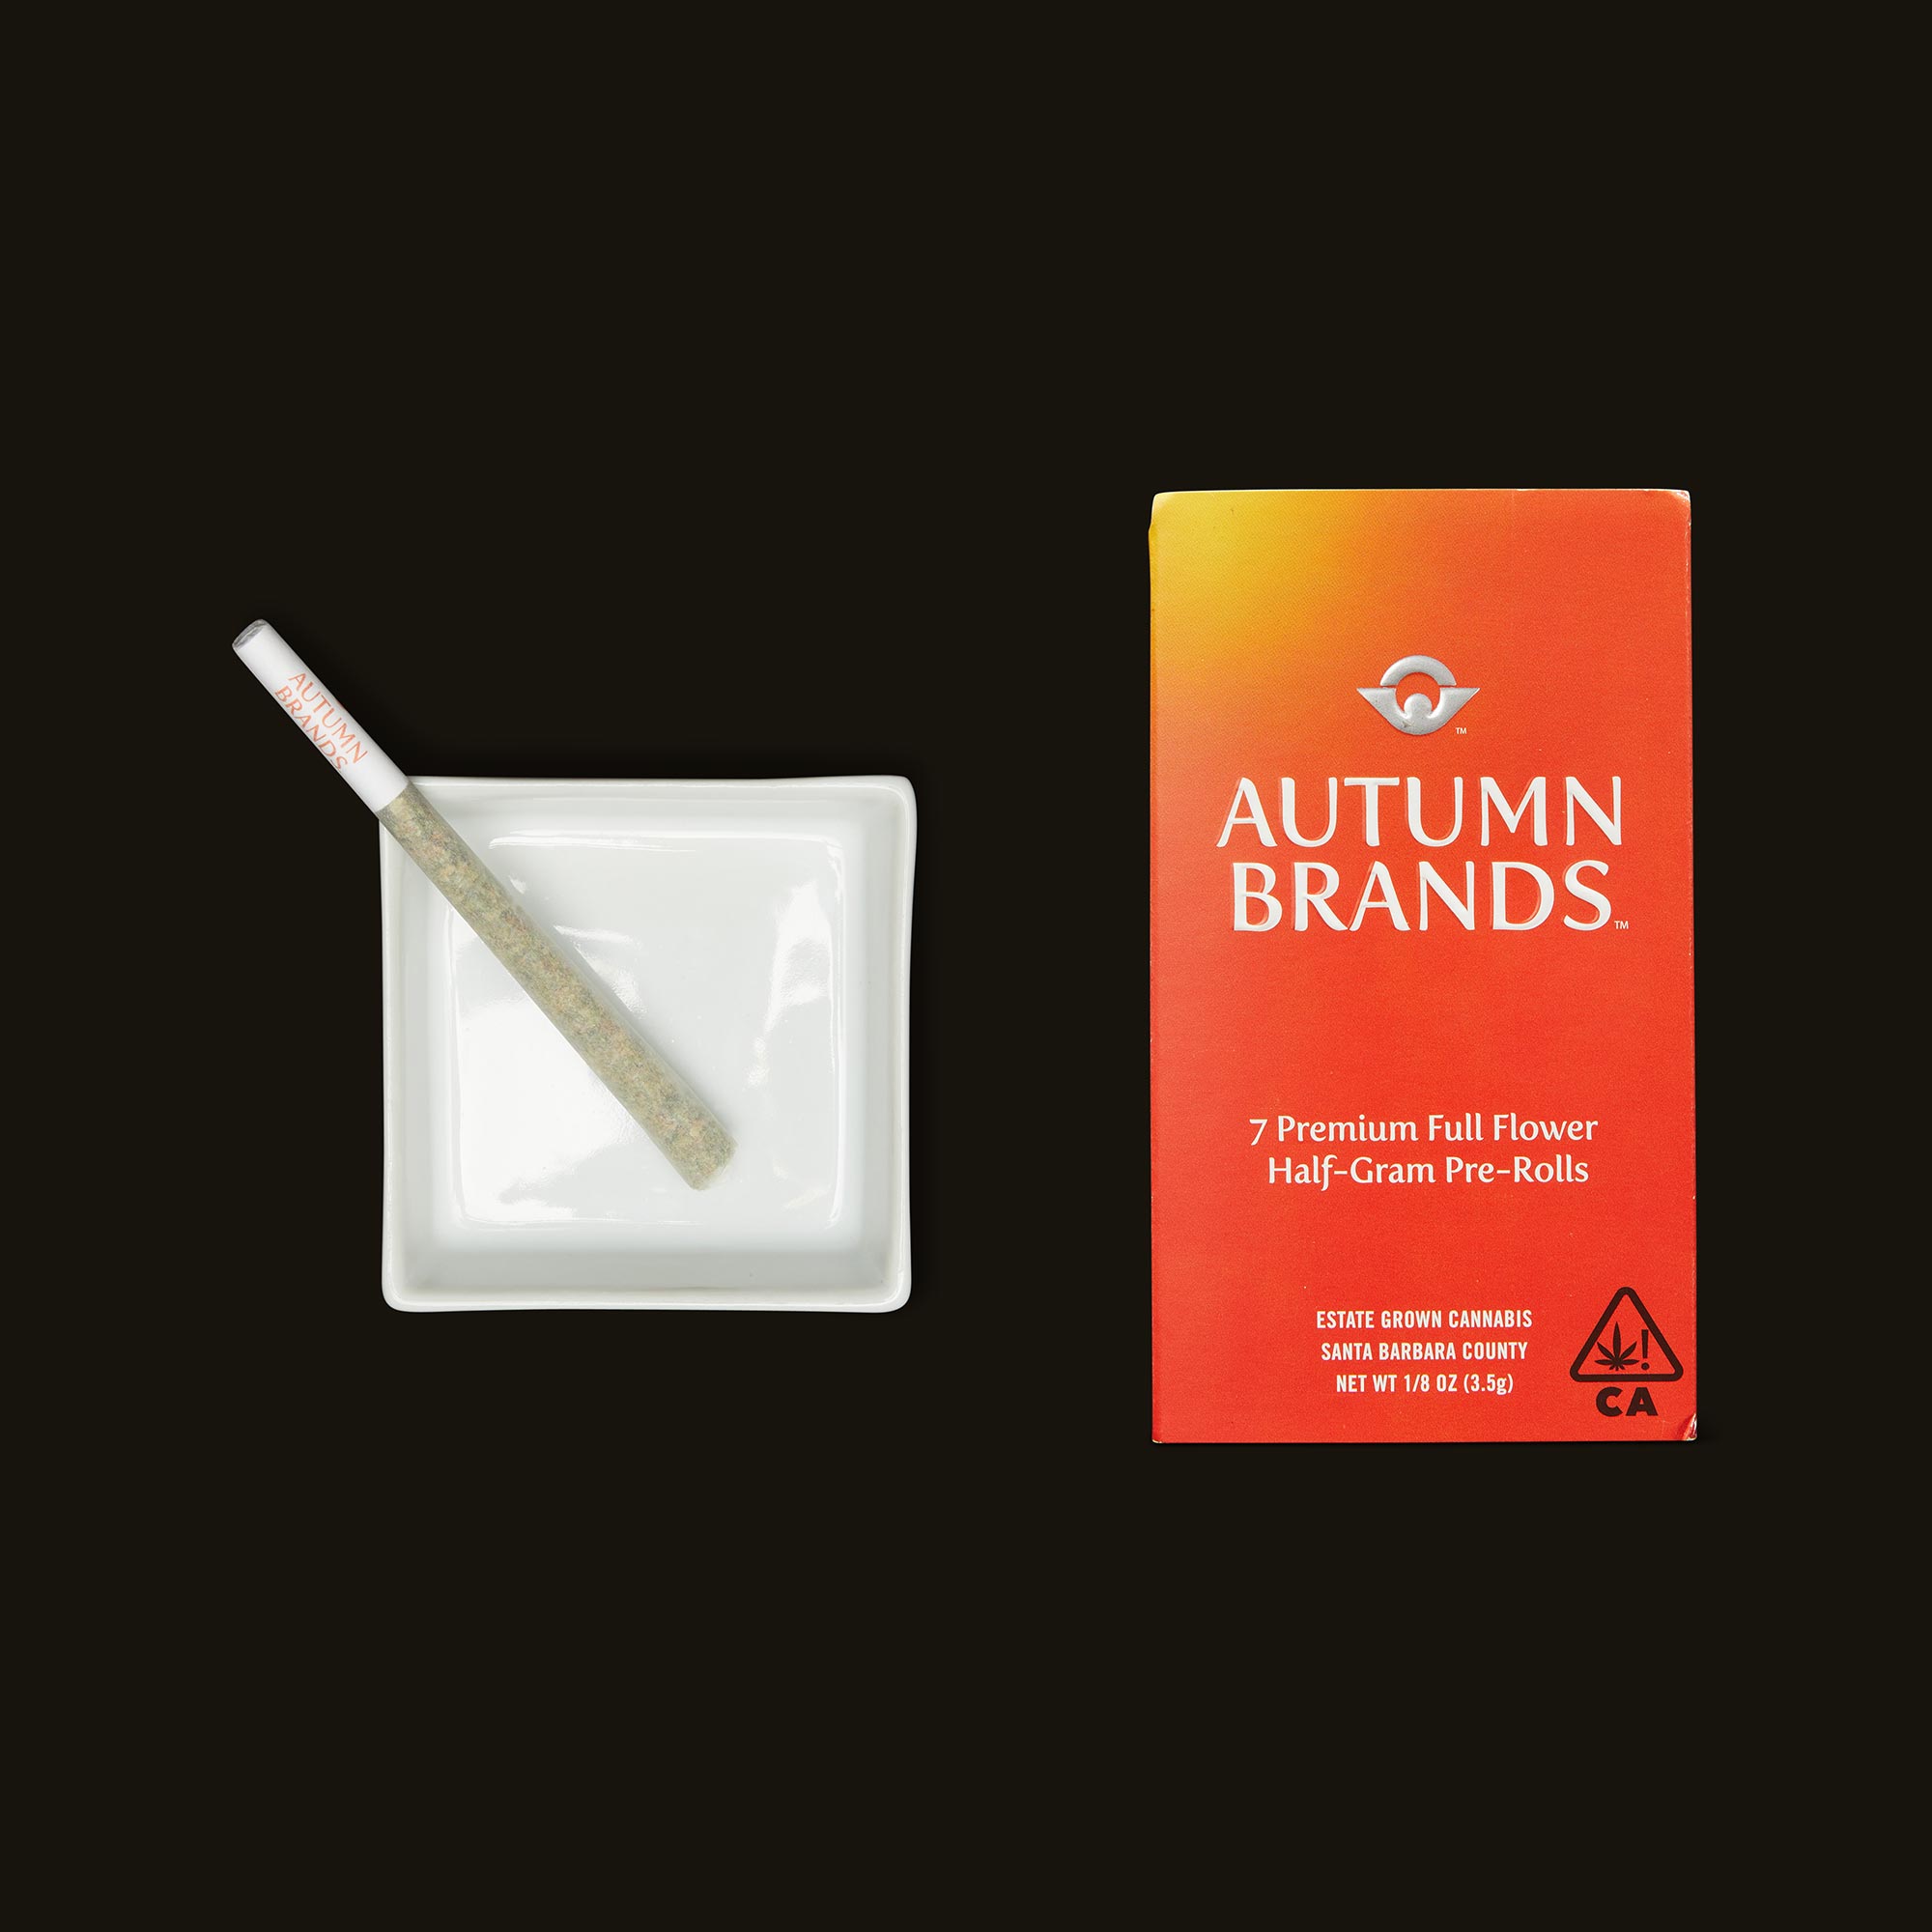 Autumn-Brands-Autumn-OG-Pre-Roll-Pack4289-2-2401490.jpg